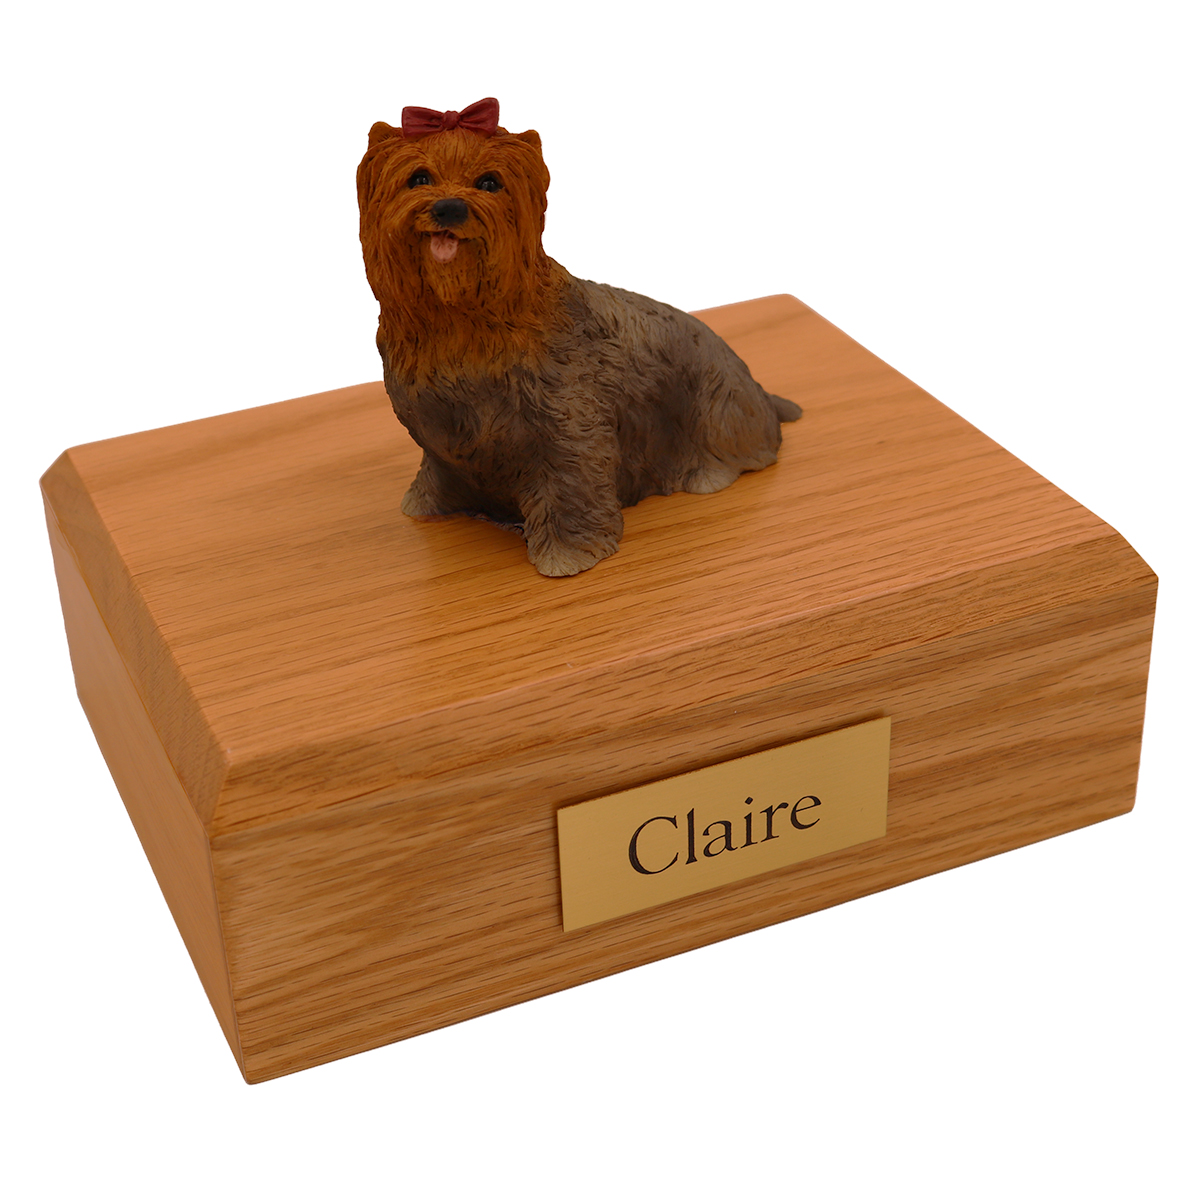 Dog, Yorkshire Terrier, Brown - Figurine Urn